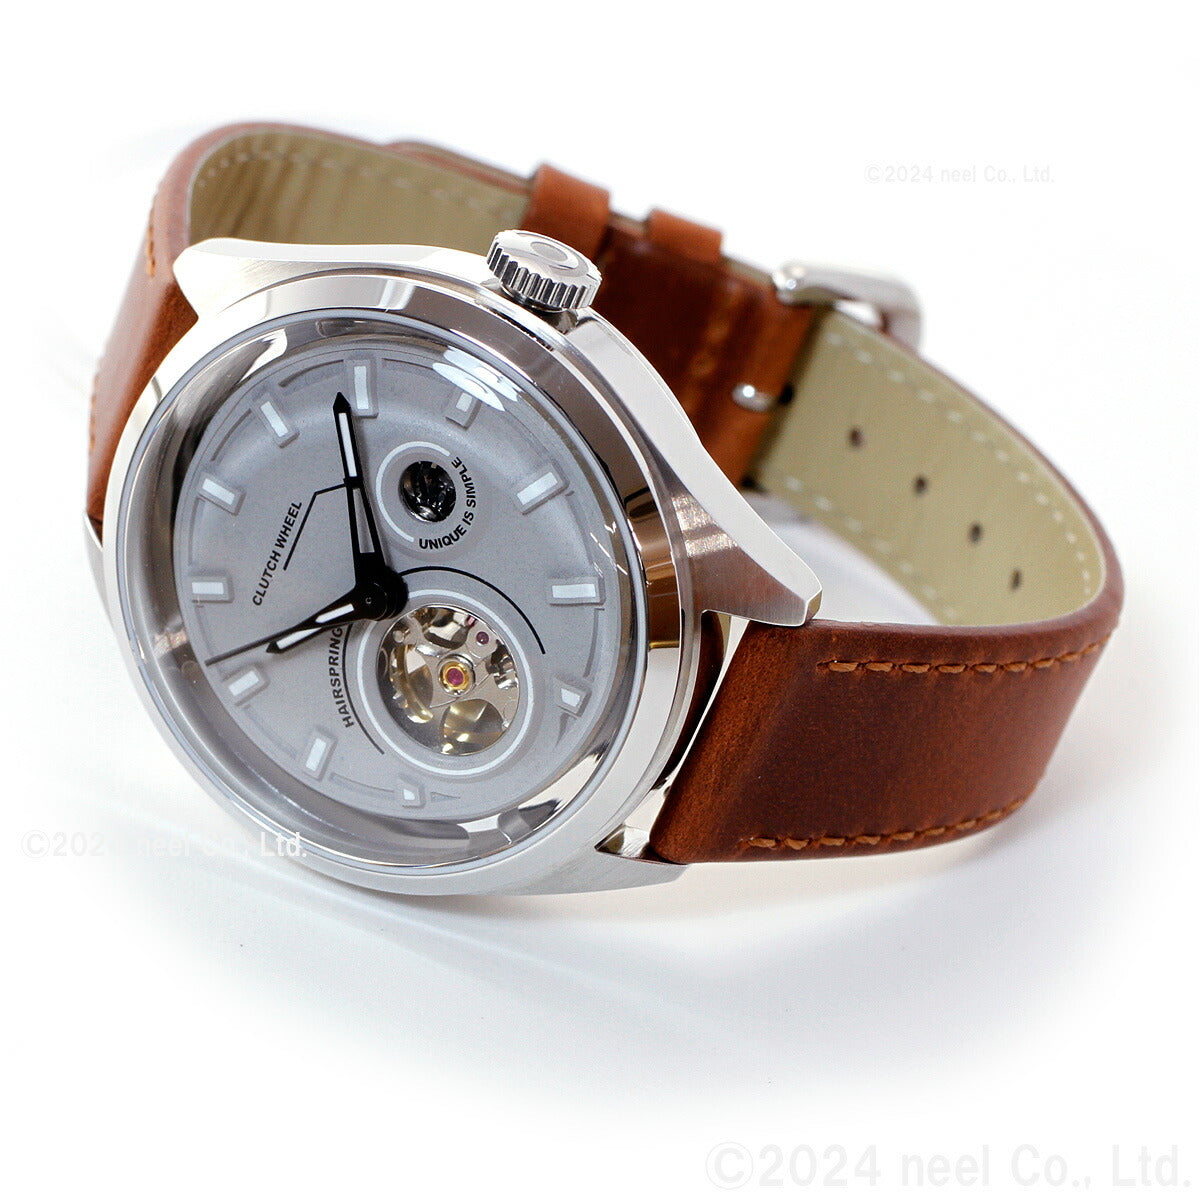 タックス TACS 腕時計 メンズ レディース ARCHITECTURE TS2301A 自動巻き